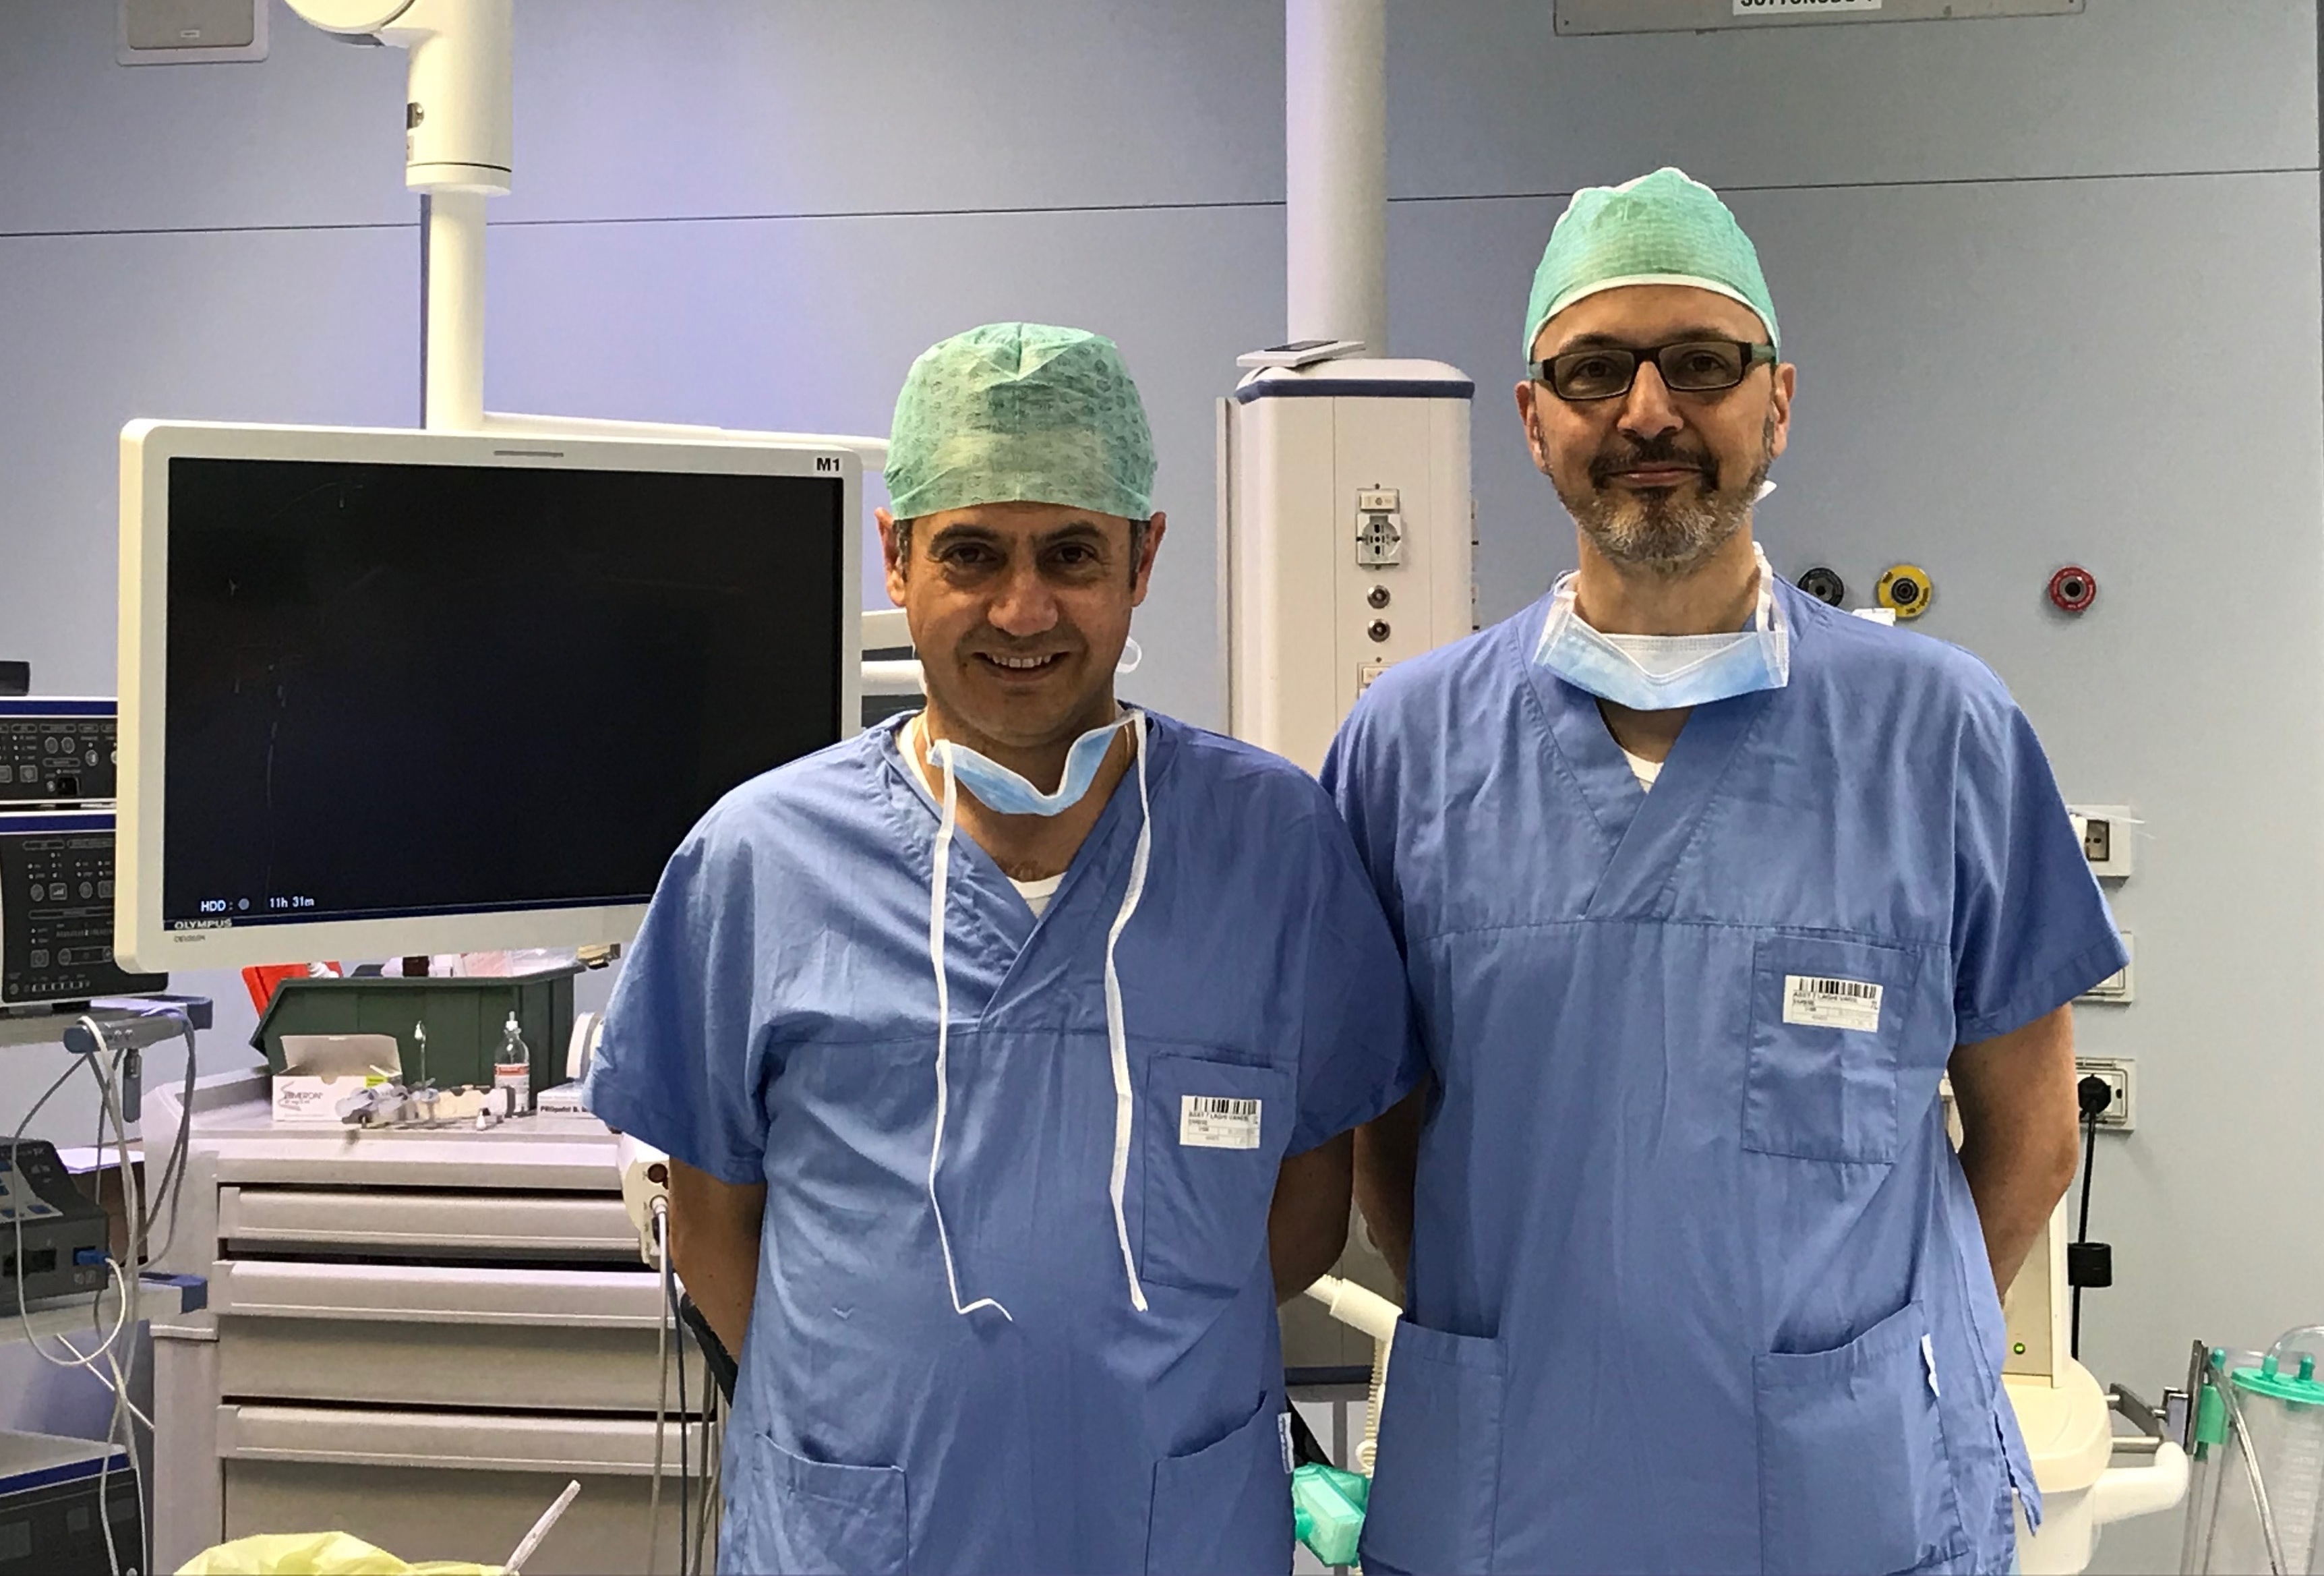 Chirurgia toracica mini-invasiva: si chiama VATS Lobectomy, e Varese è tra i principali centri in Italia ad applicarla.